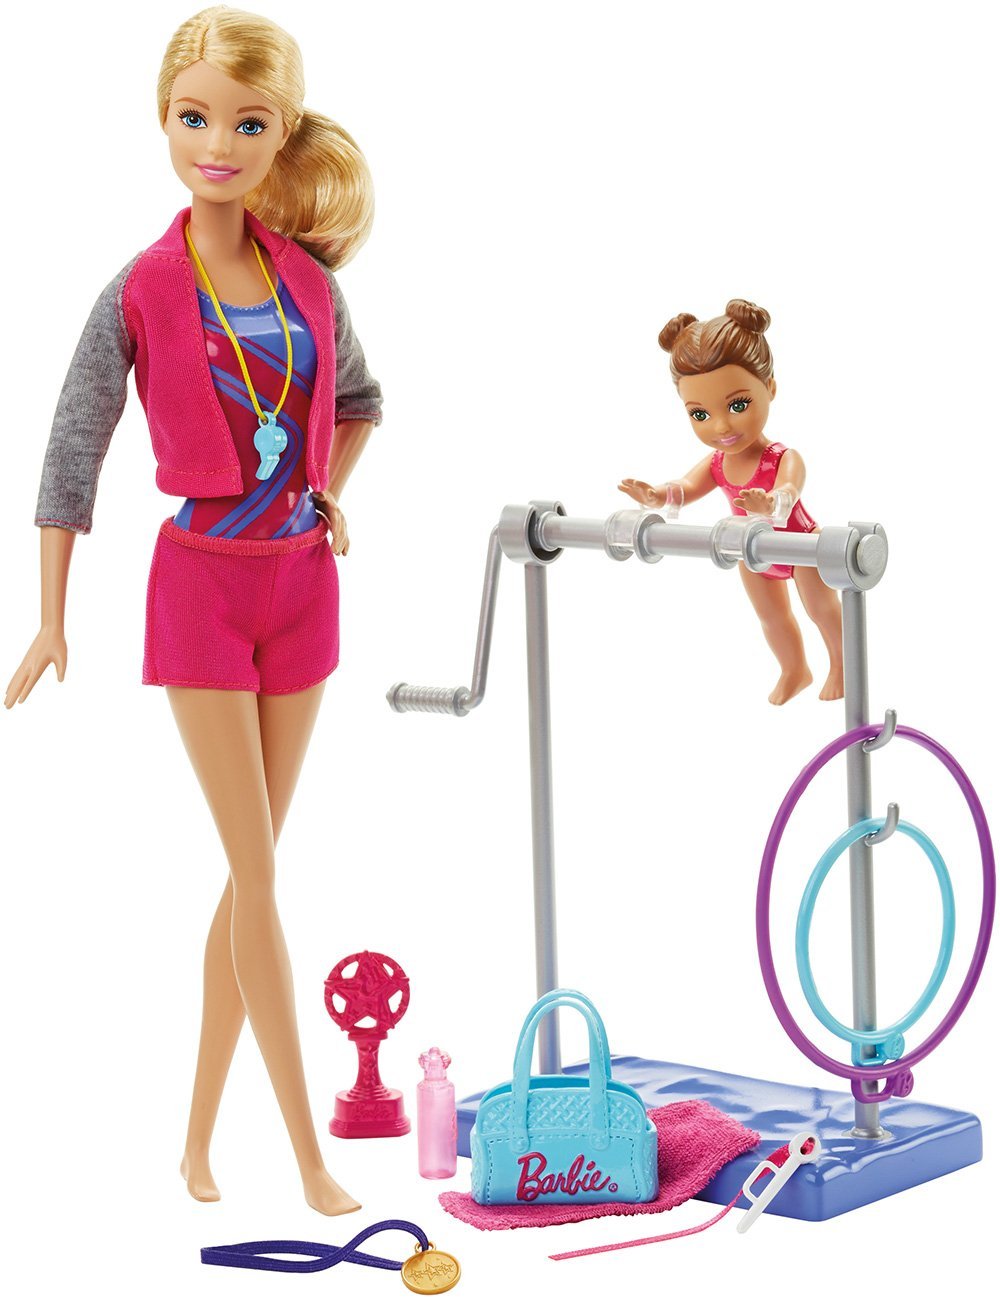 Barbie Gymnastic Coach Dolls & Playset – Just $14.99!